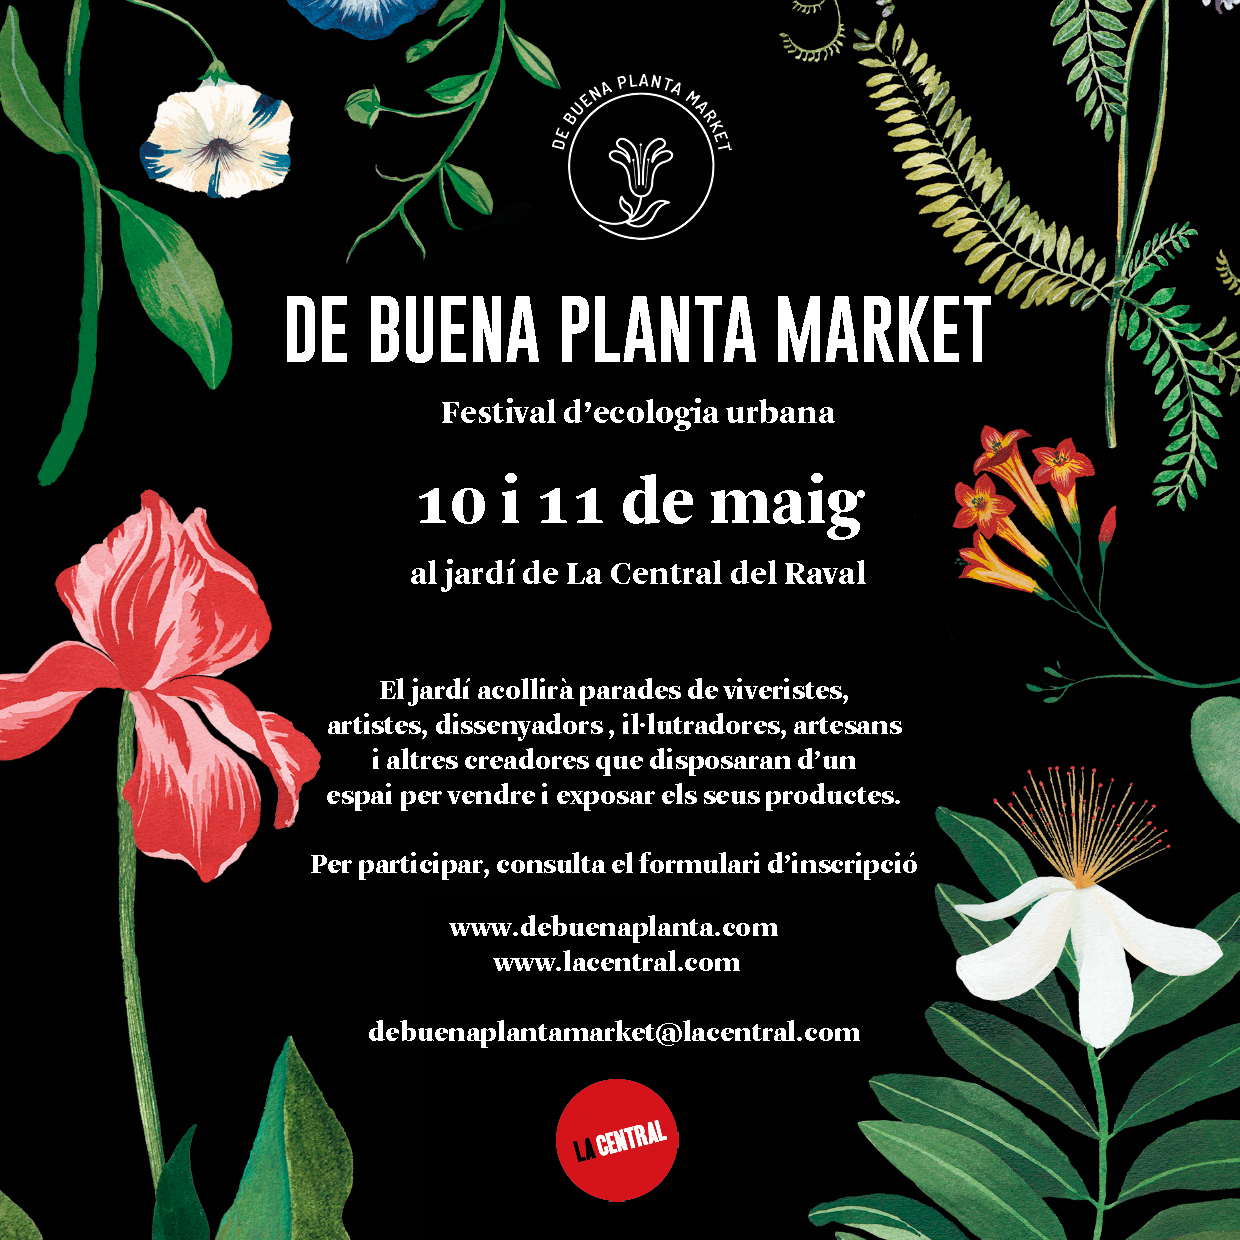 De Buena Planta Market por De Buena Planta